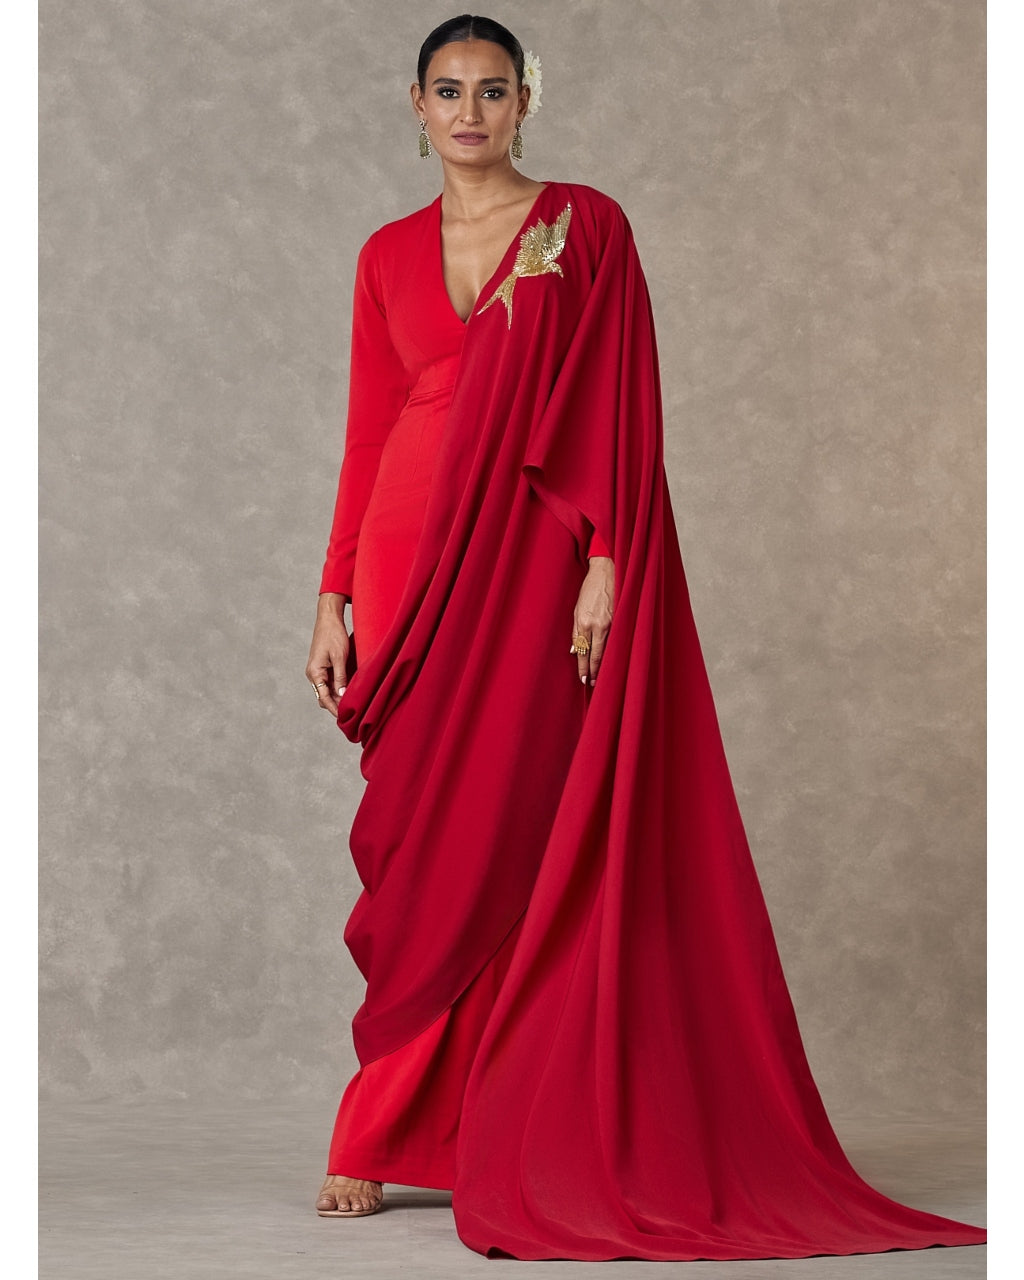 Red Son Chidiya Sari Gown